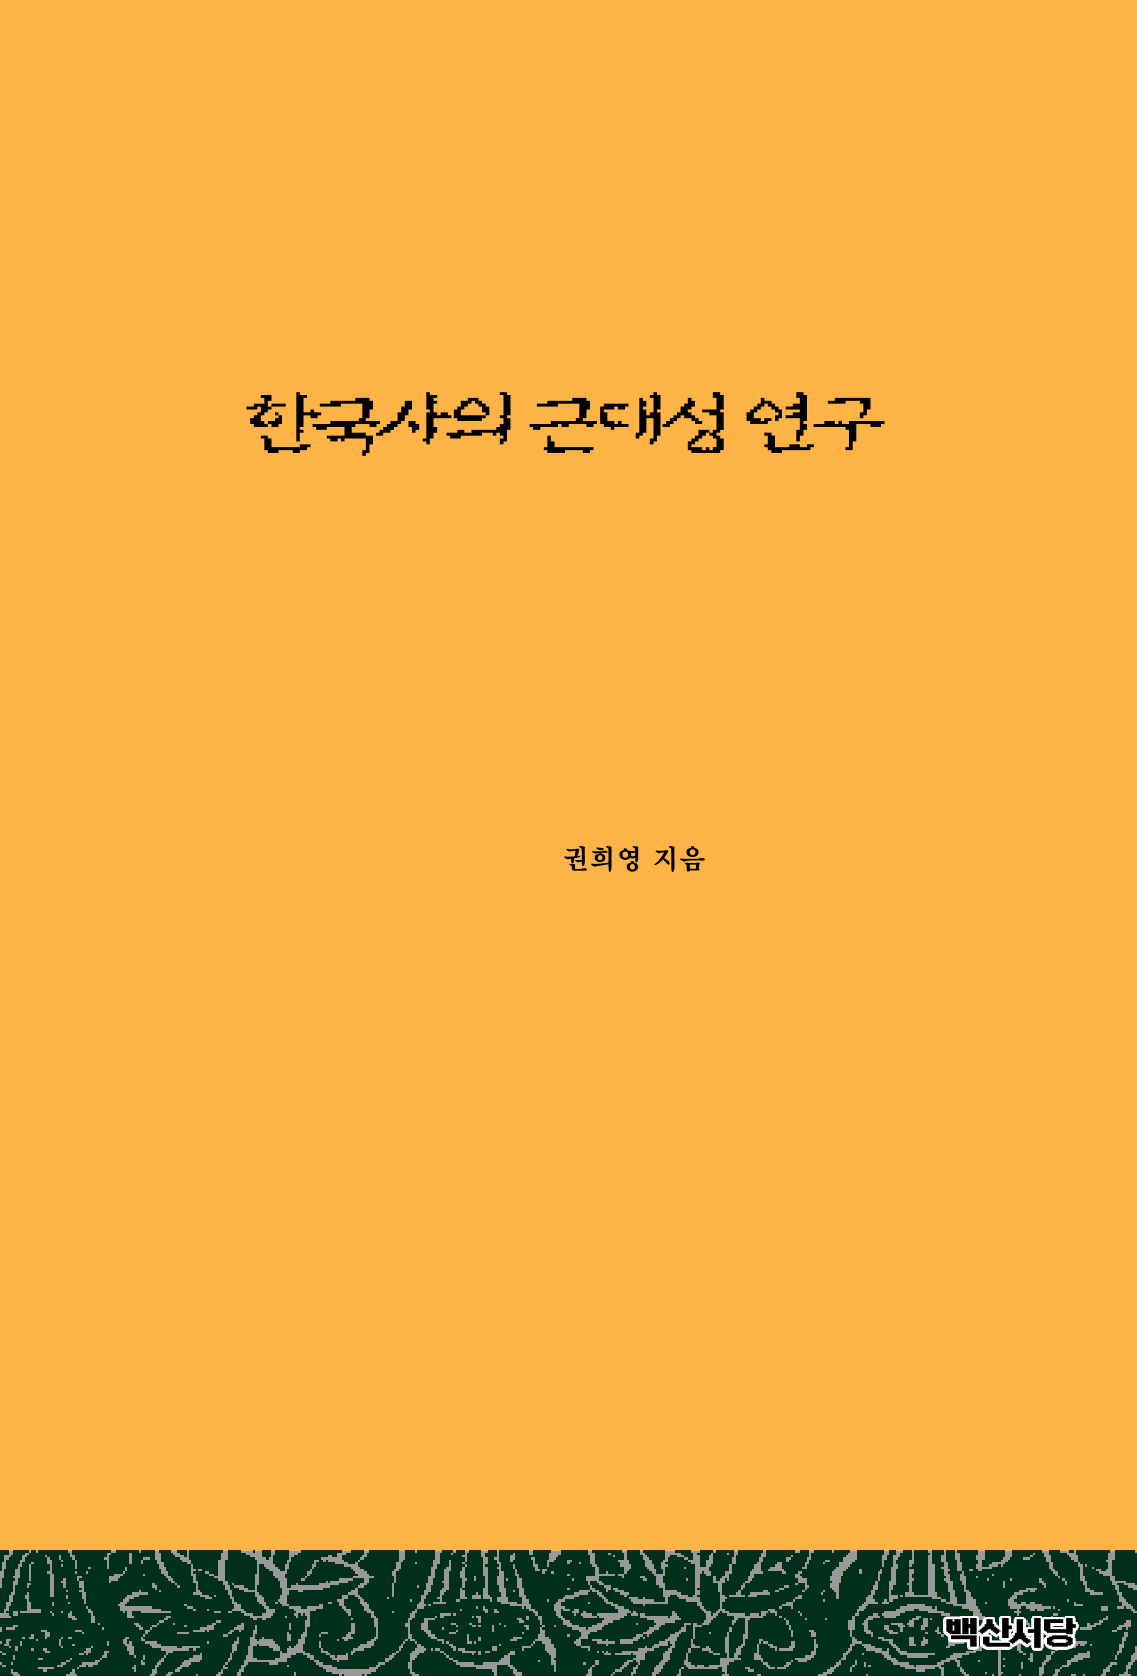 한국사의 근대성 연구